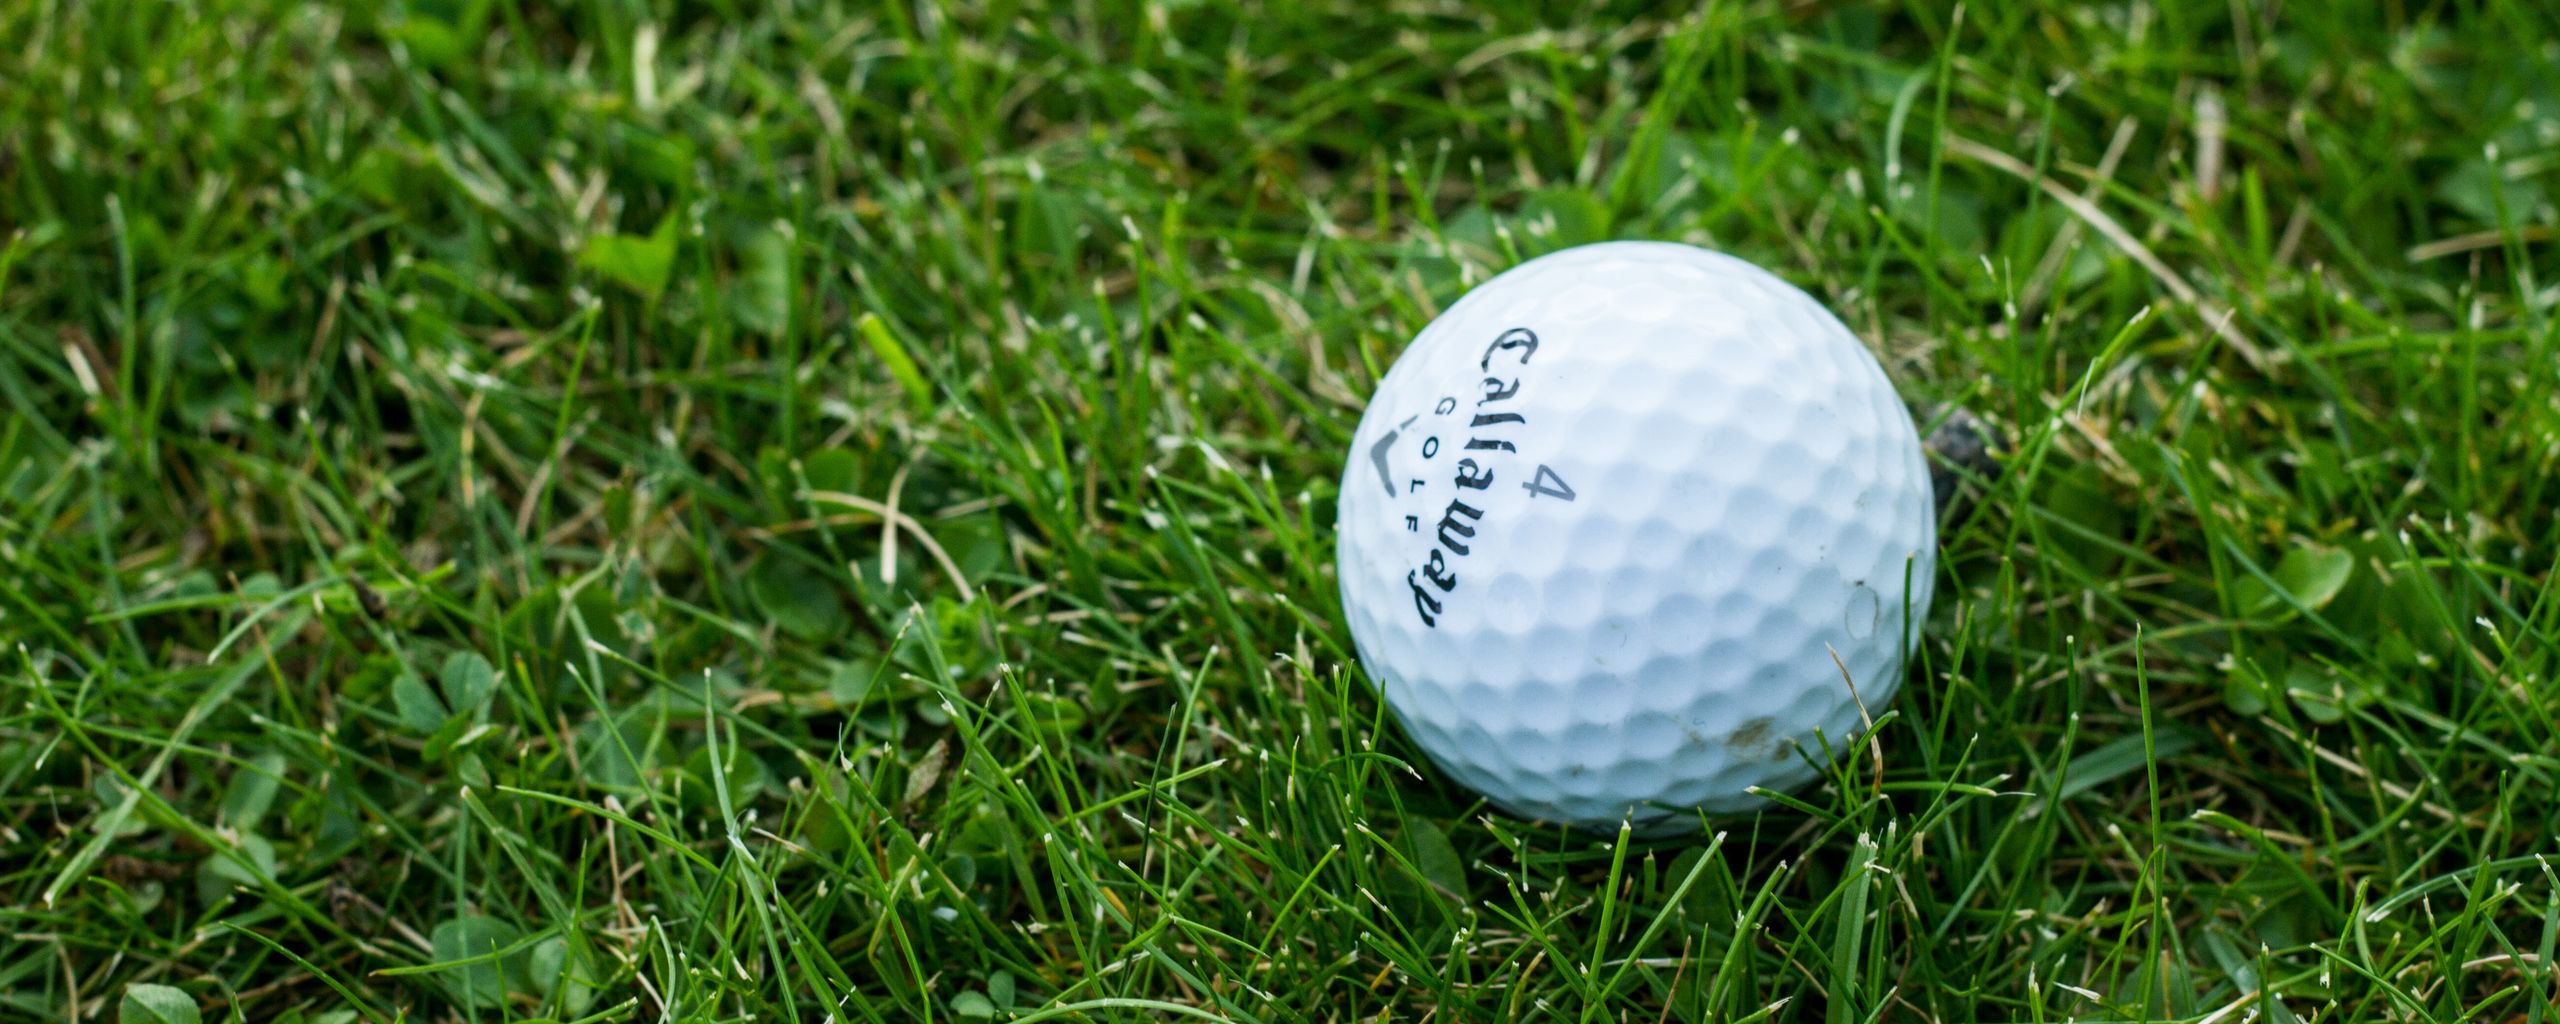 2560x1024 Wallpaper golf, ball, grass